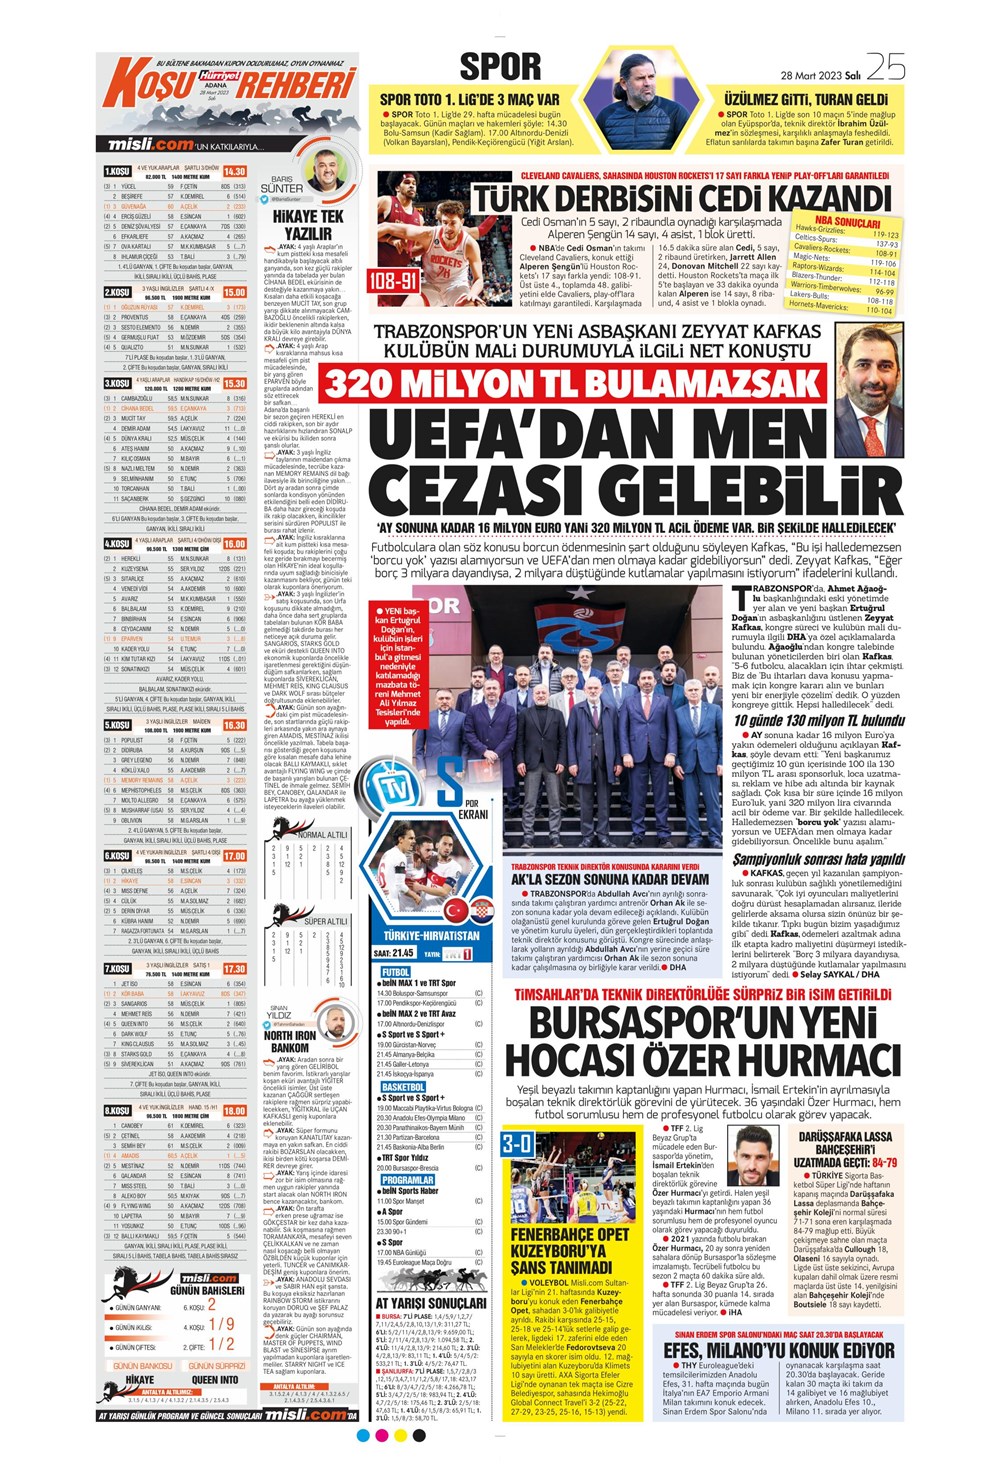 "Vurduğumuz gol olsun" - Sporun manşetleri - 18. Foto